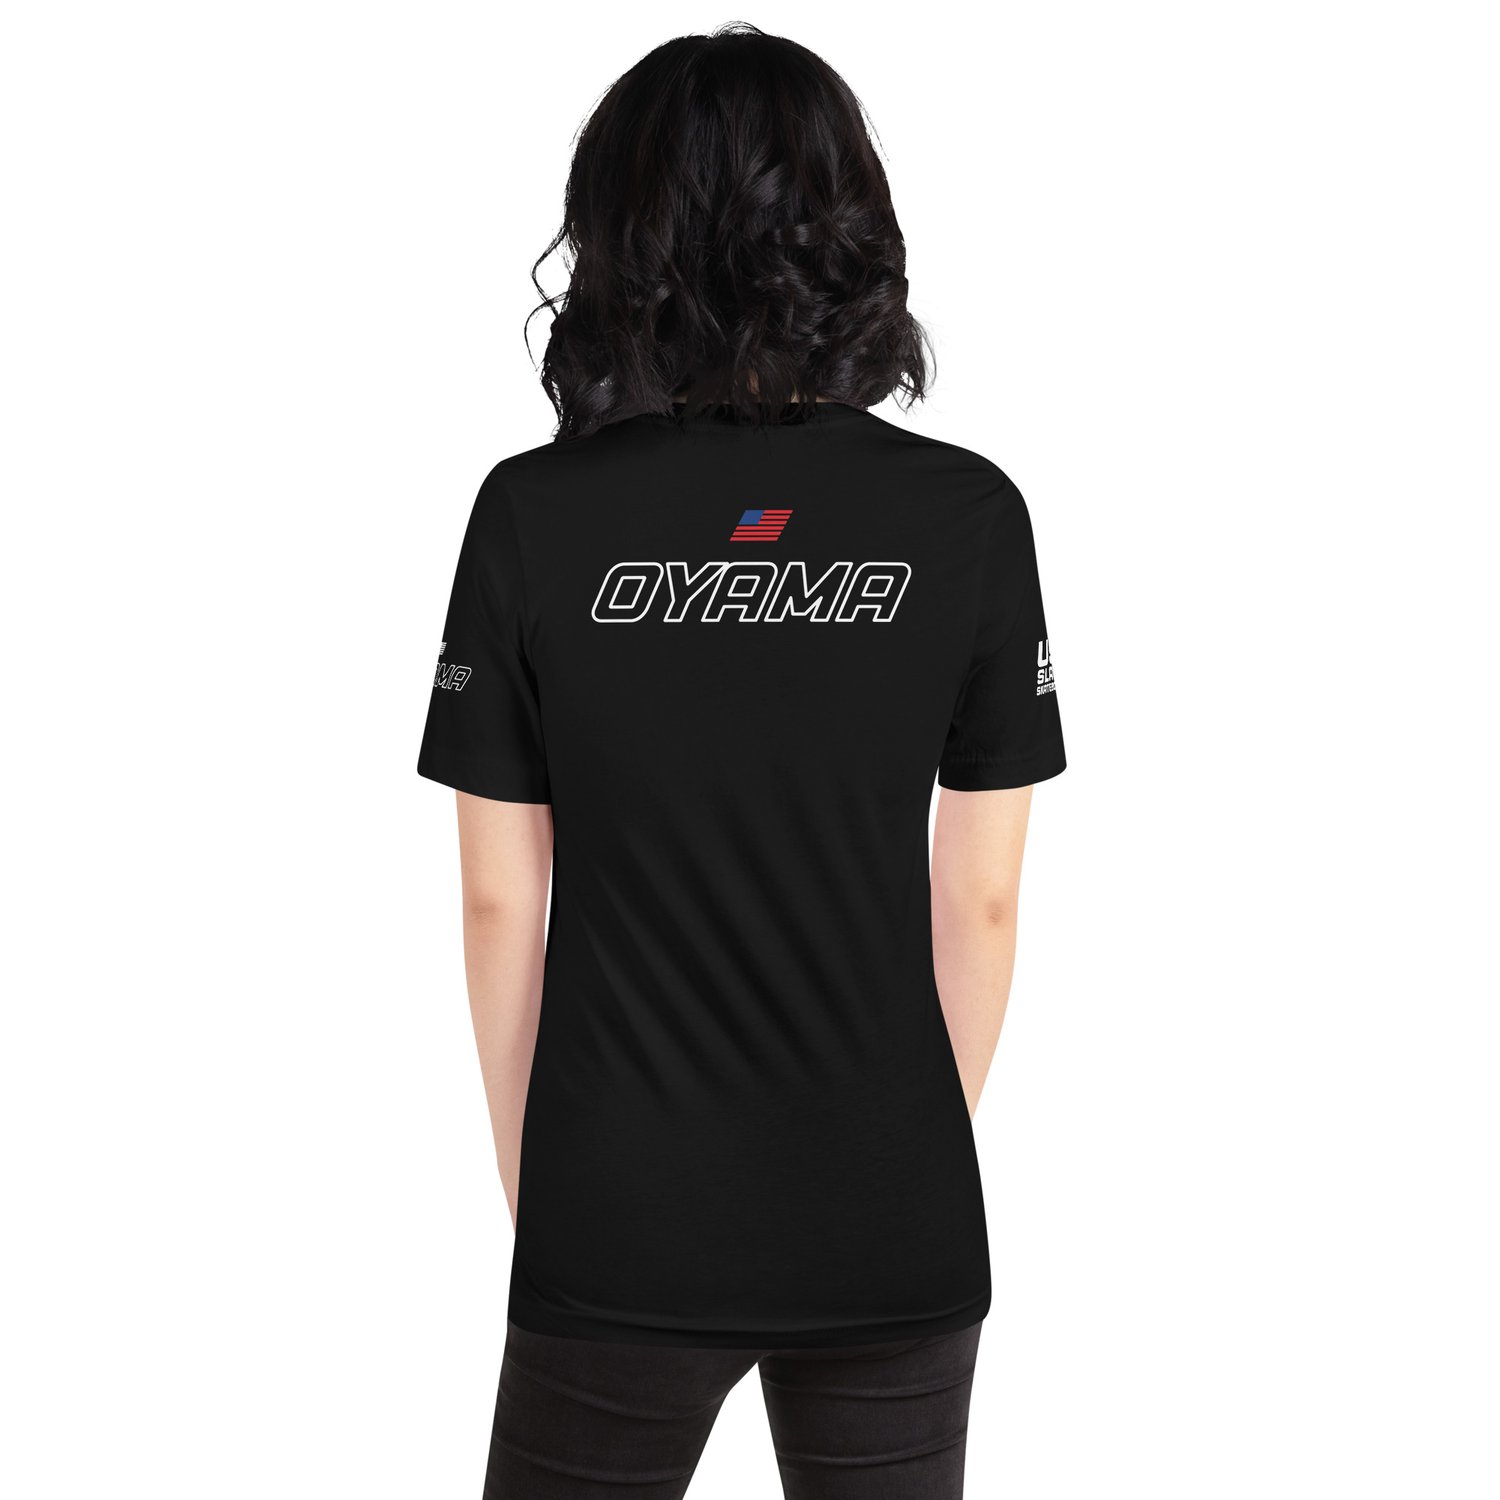 Image of Oyama USA Slalom Skateboarding Unisex T-shirt Black